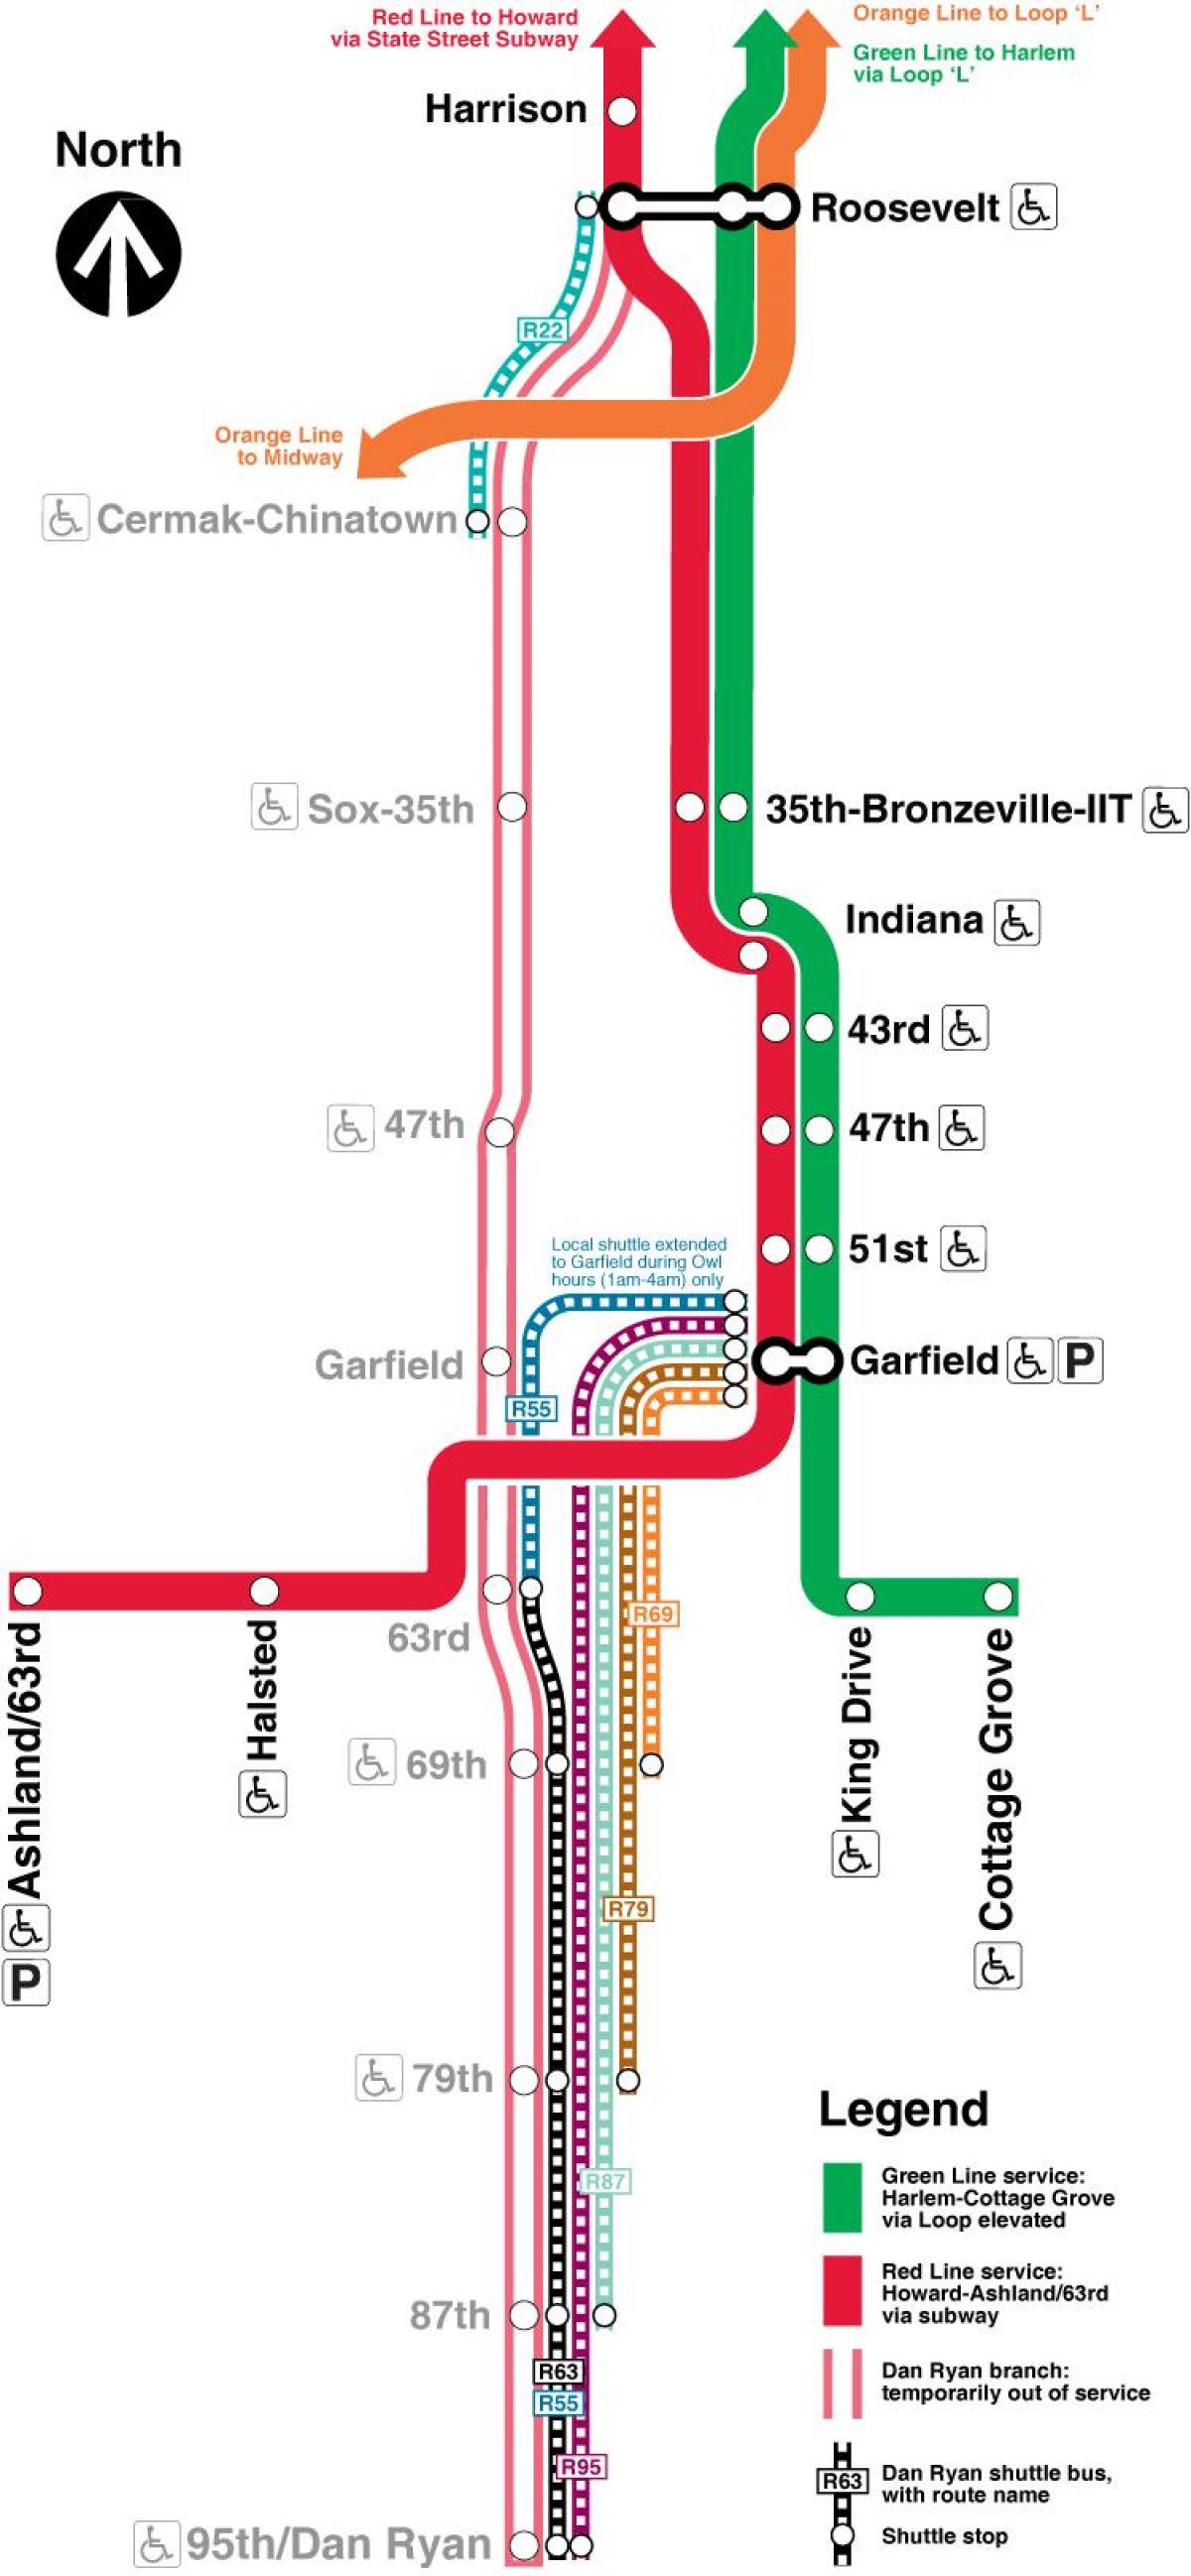 Çikaqo metro xəritəsi qırmızı xətt